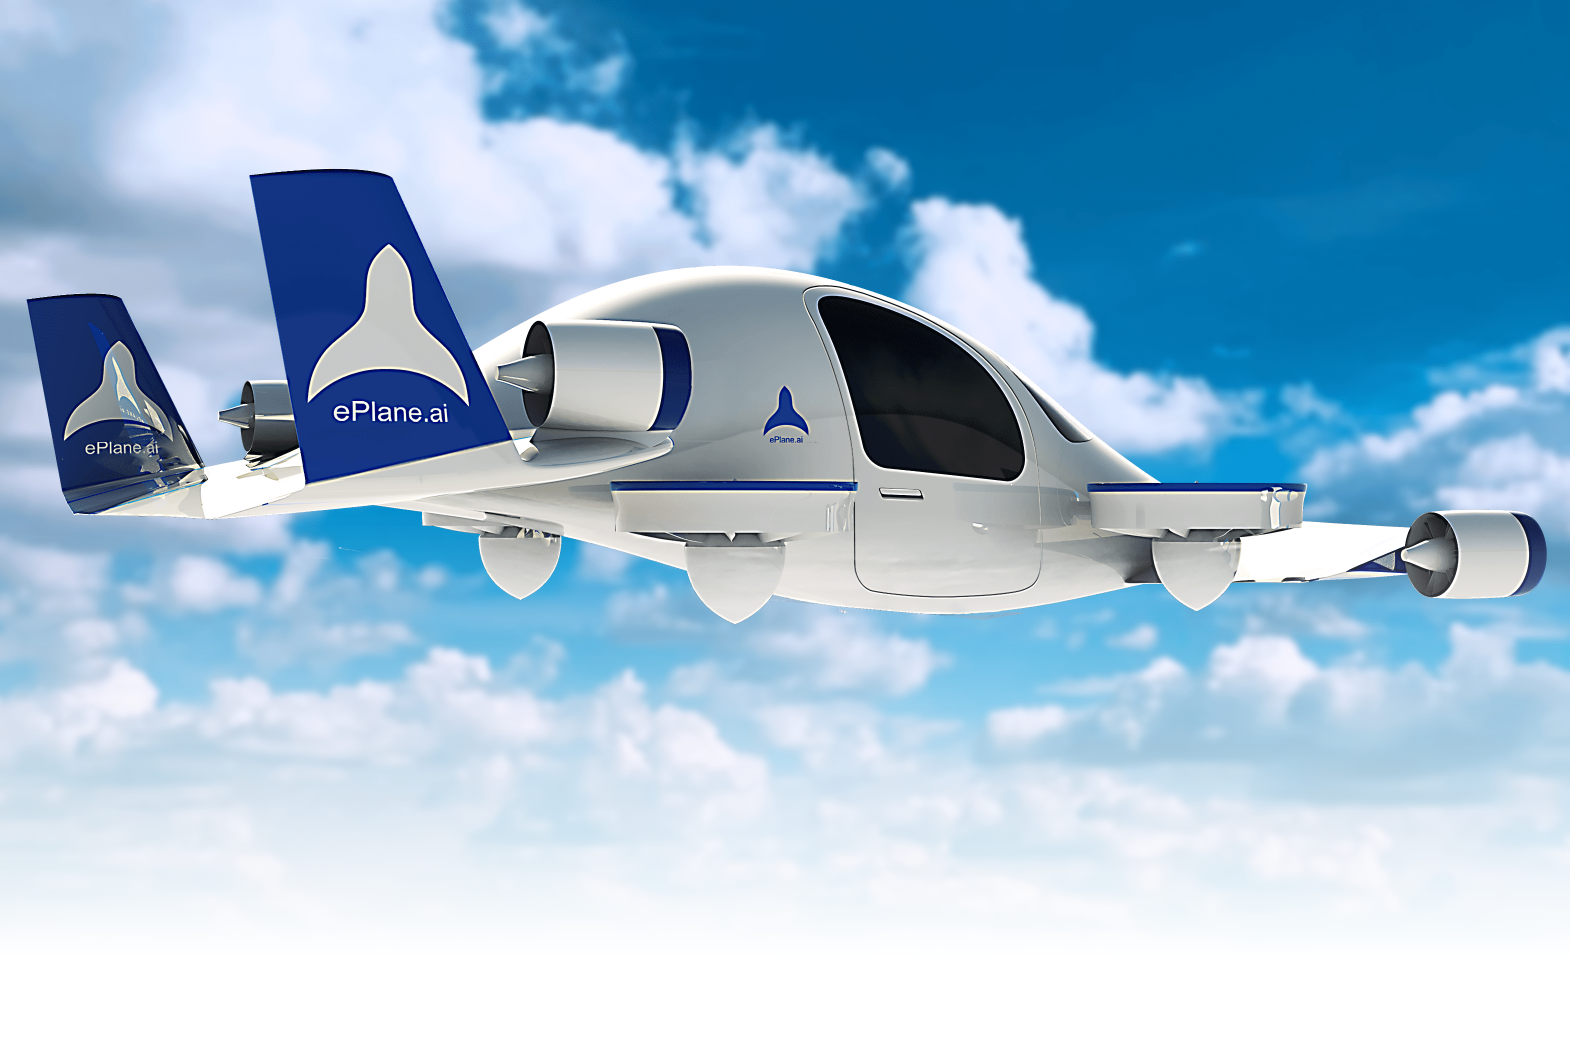 De oprichter van ePlane zei dat het bedrijf van plan is om het eerste prototype van de luchttaxi eind 2024 uit te brengen en in 2027 de volledige commercialisering in India te starten.